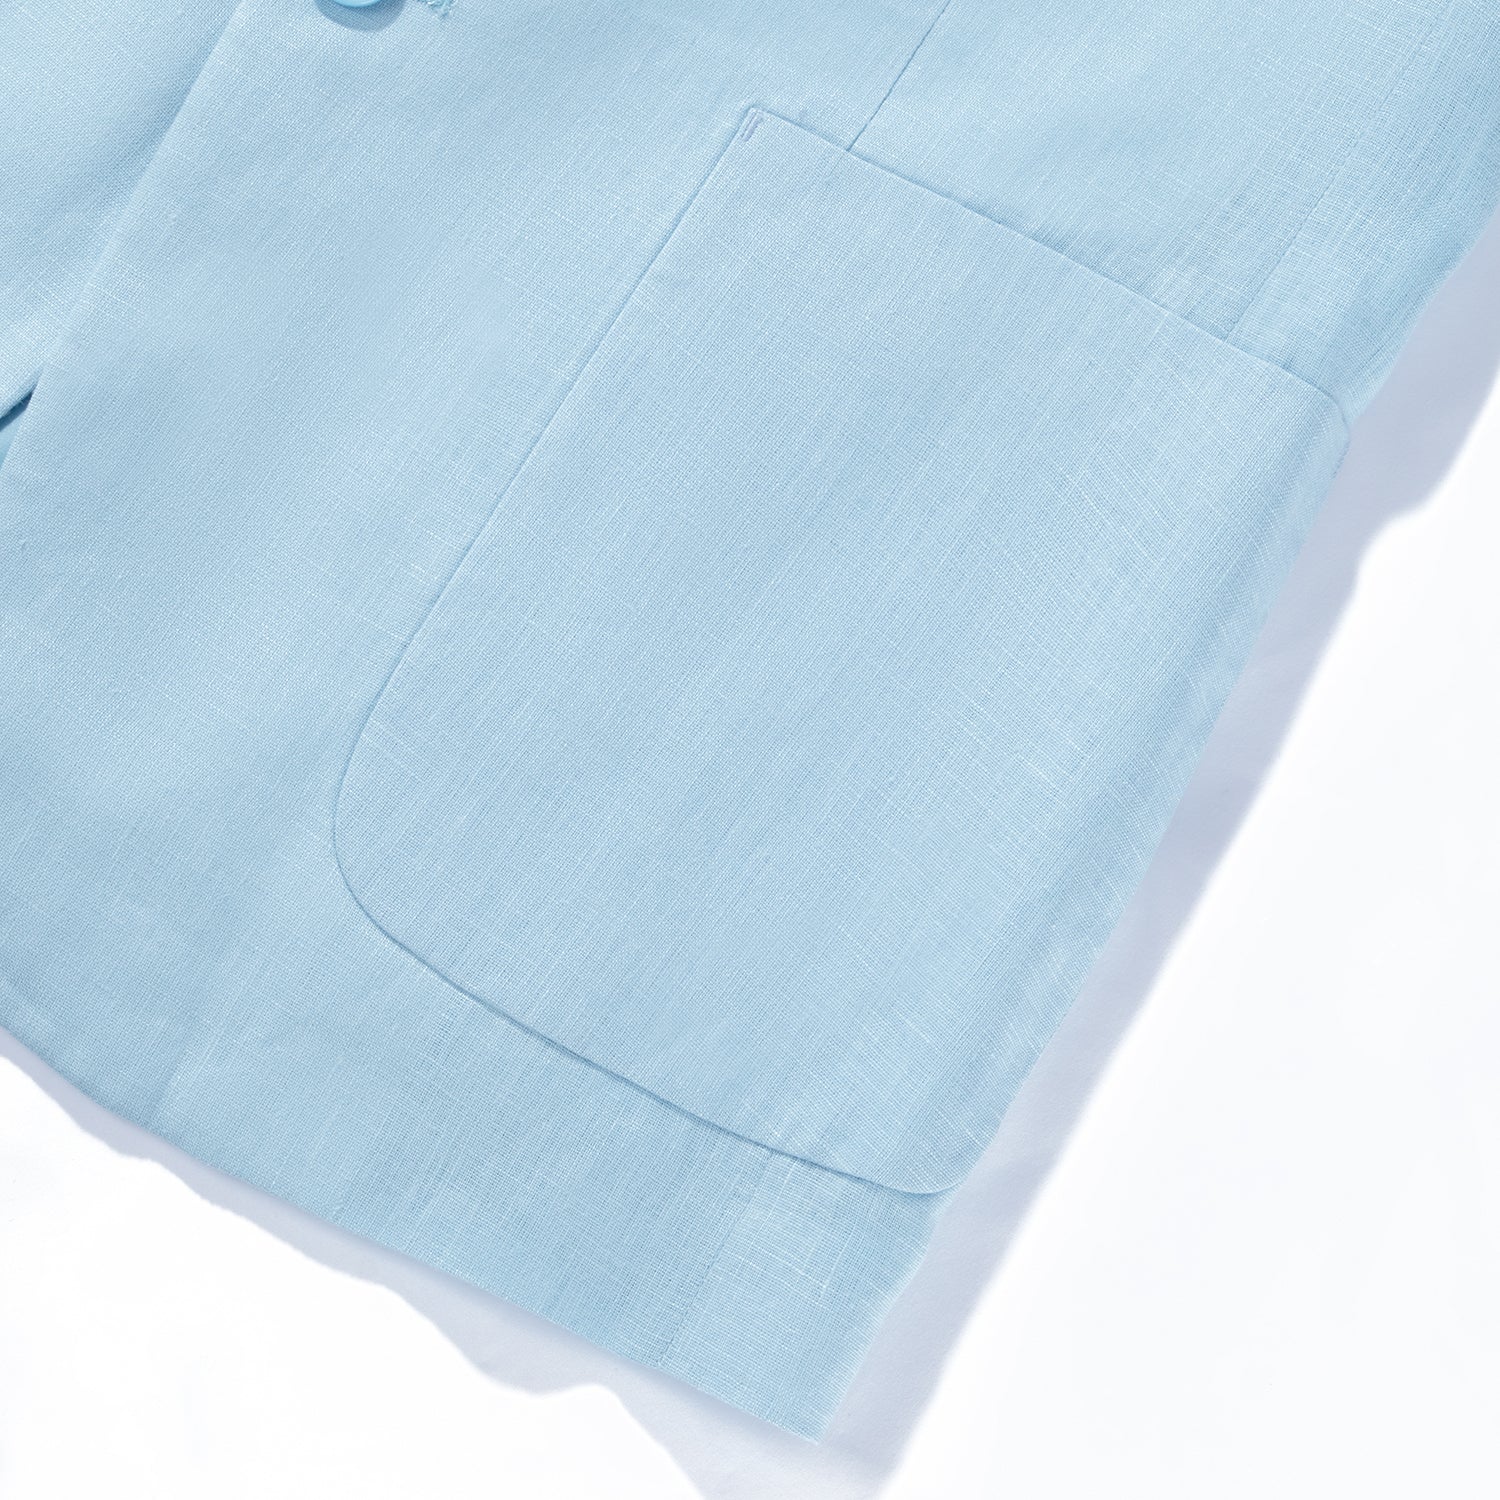 1PA1 Men's 100% Linen Light Blue Jacket Trousers 2-Pieces Suit Set